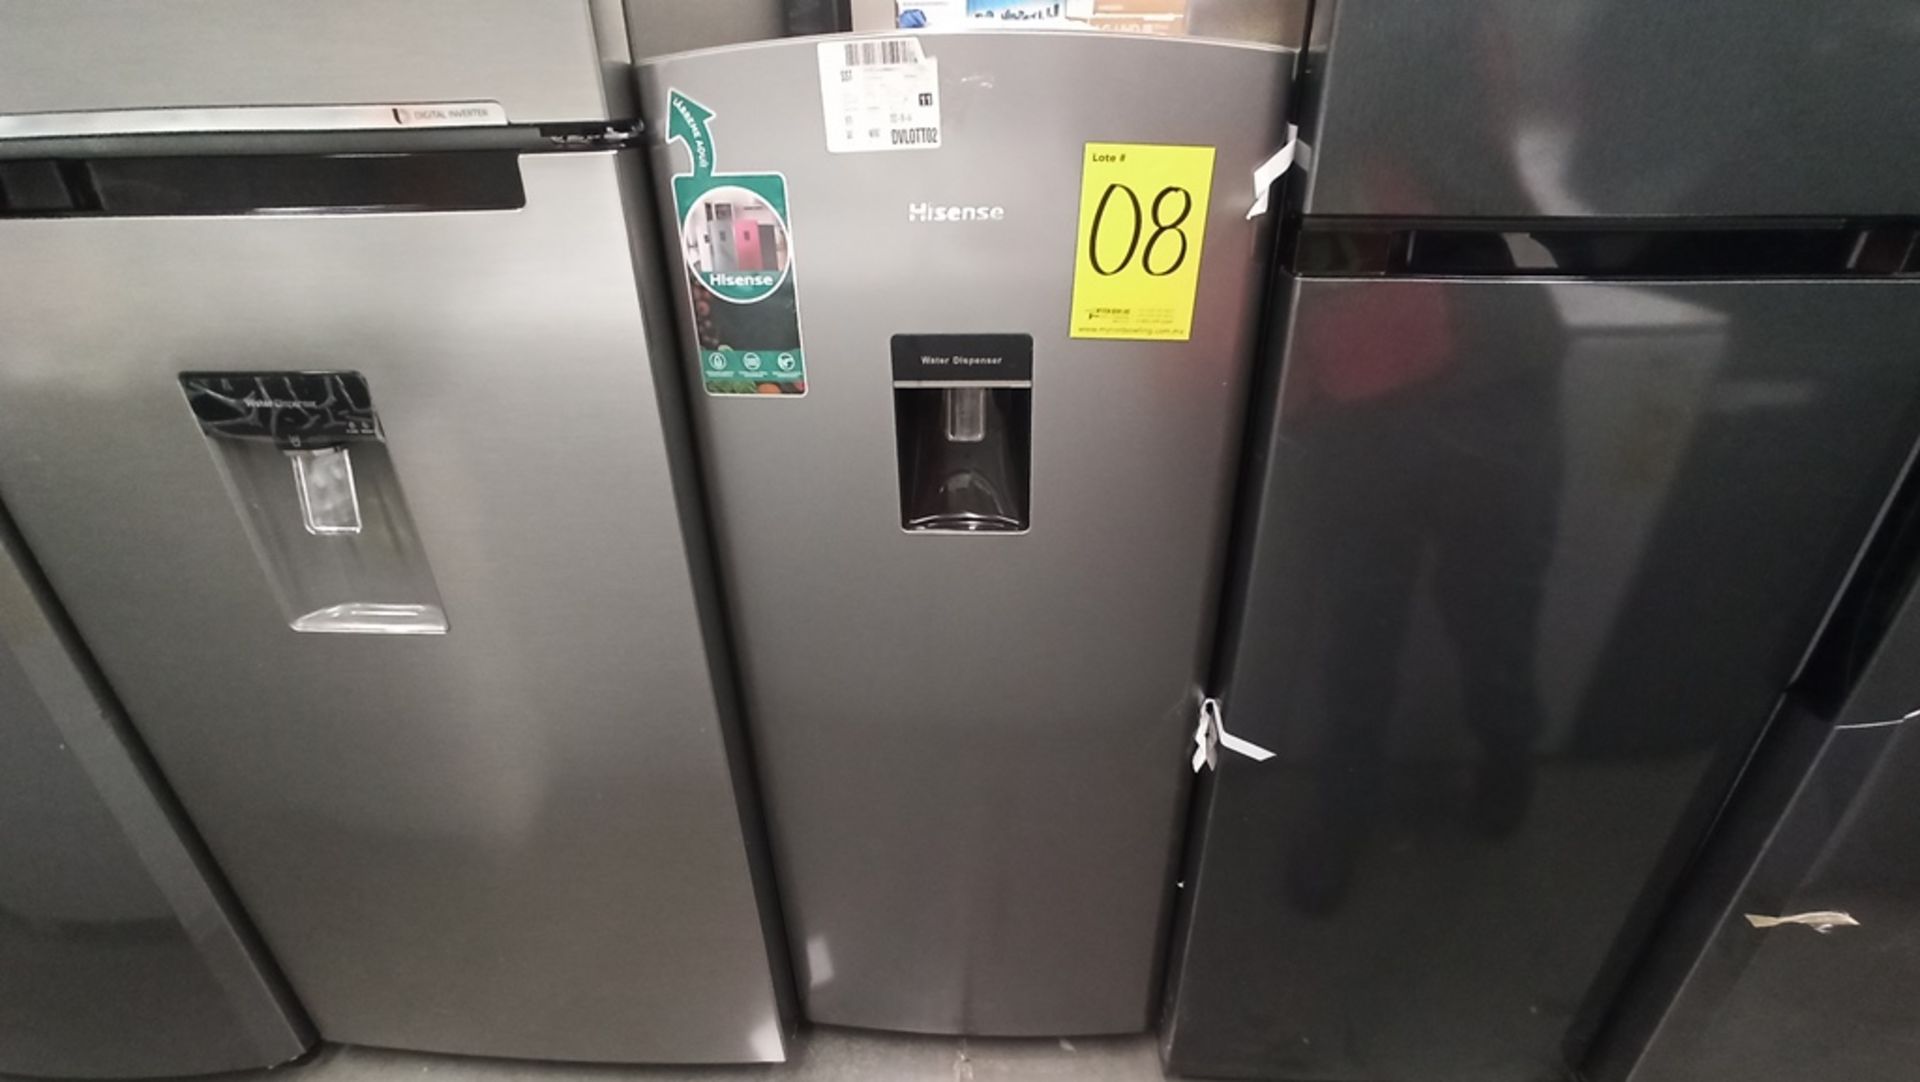 Lote De 2 Refrigeradores Contiene: 1 Refrigerador Marca HISENSE, Modelo RR63D6WGX, No De Serie